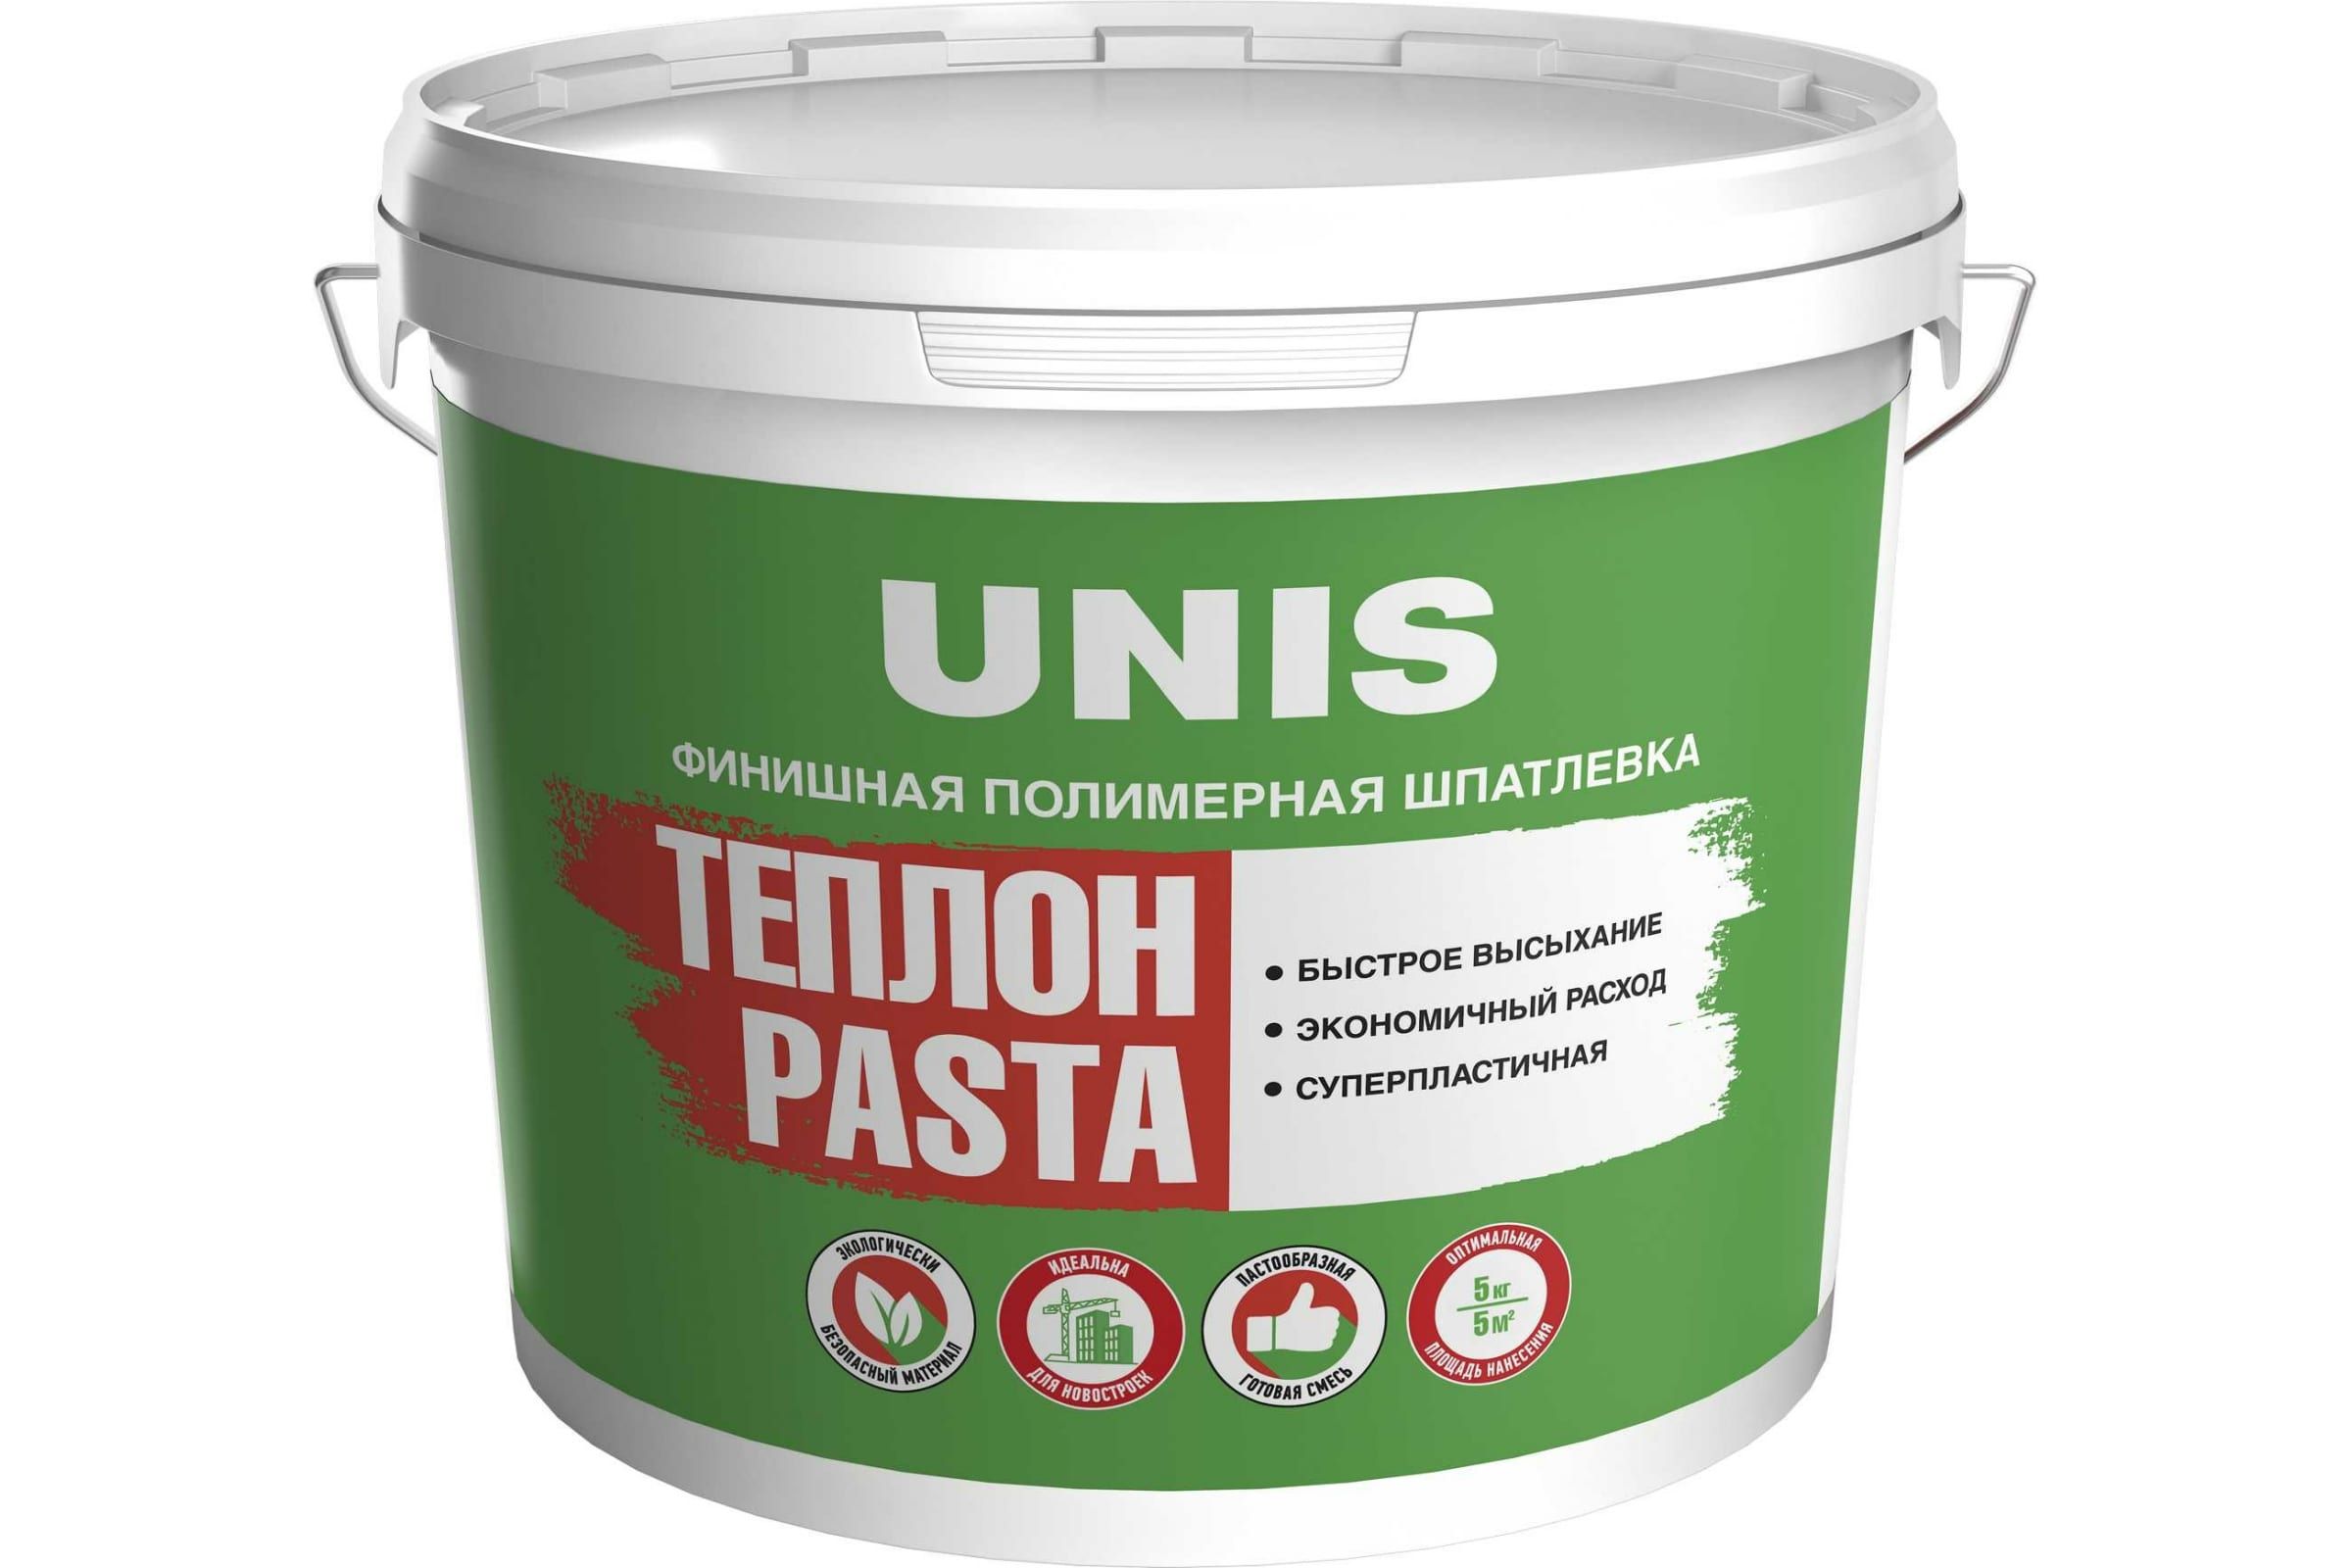 Шпатлевка UNIS Теплон Pasta полимерная, финишная, 5 кг 4607005184887 unis шпатлевка полимерная pasta юнис теплон готовая 15кг 11606721 4607005184894